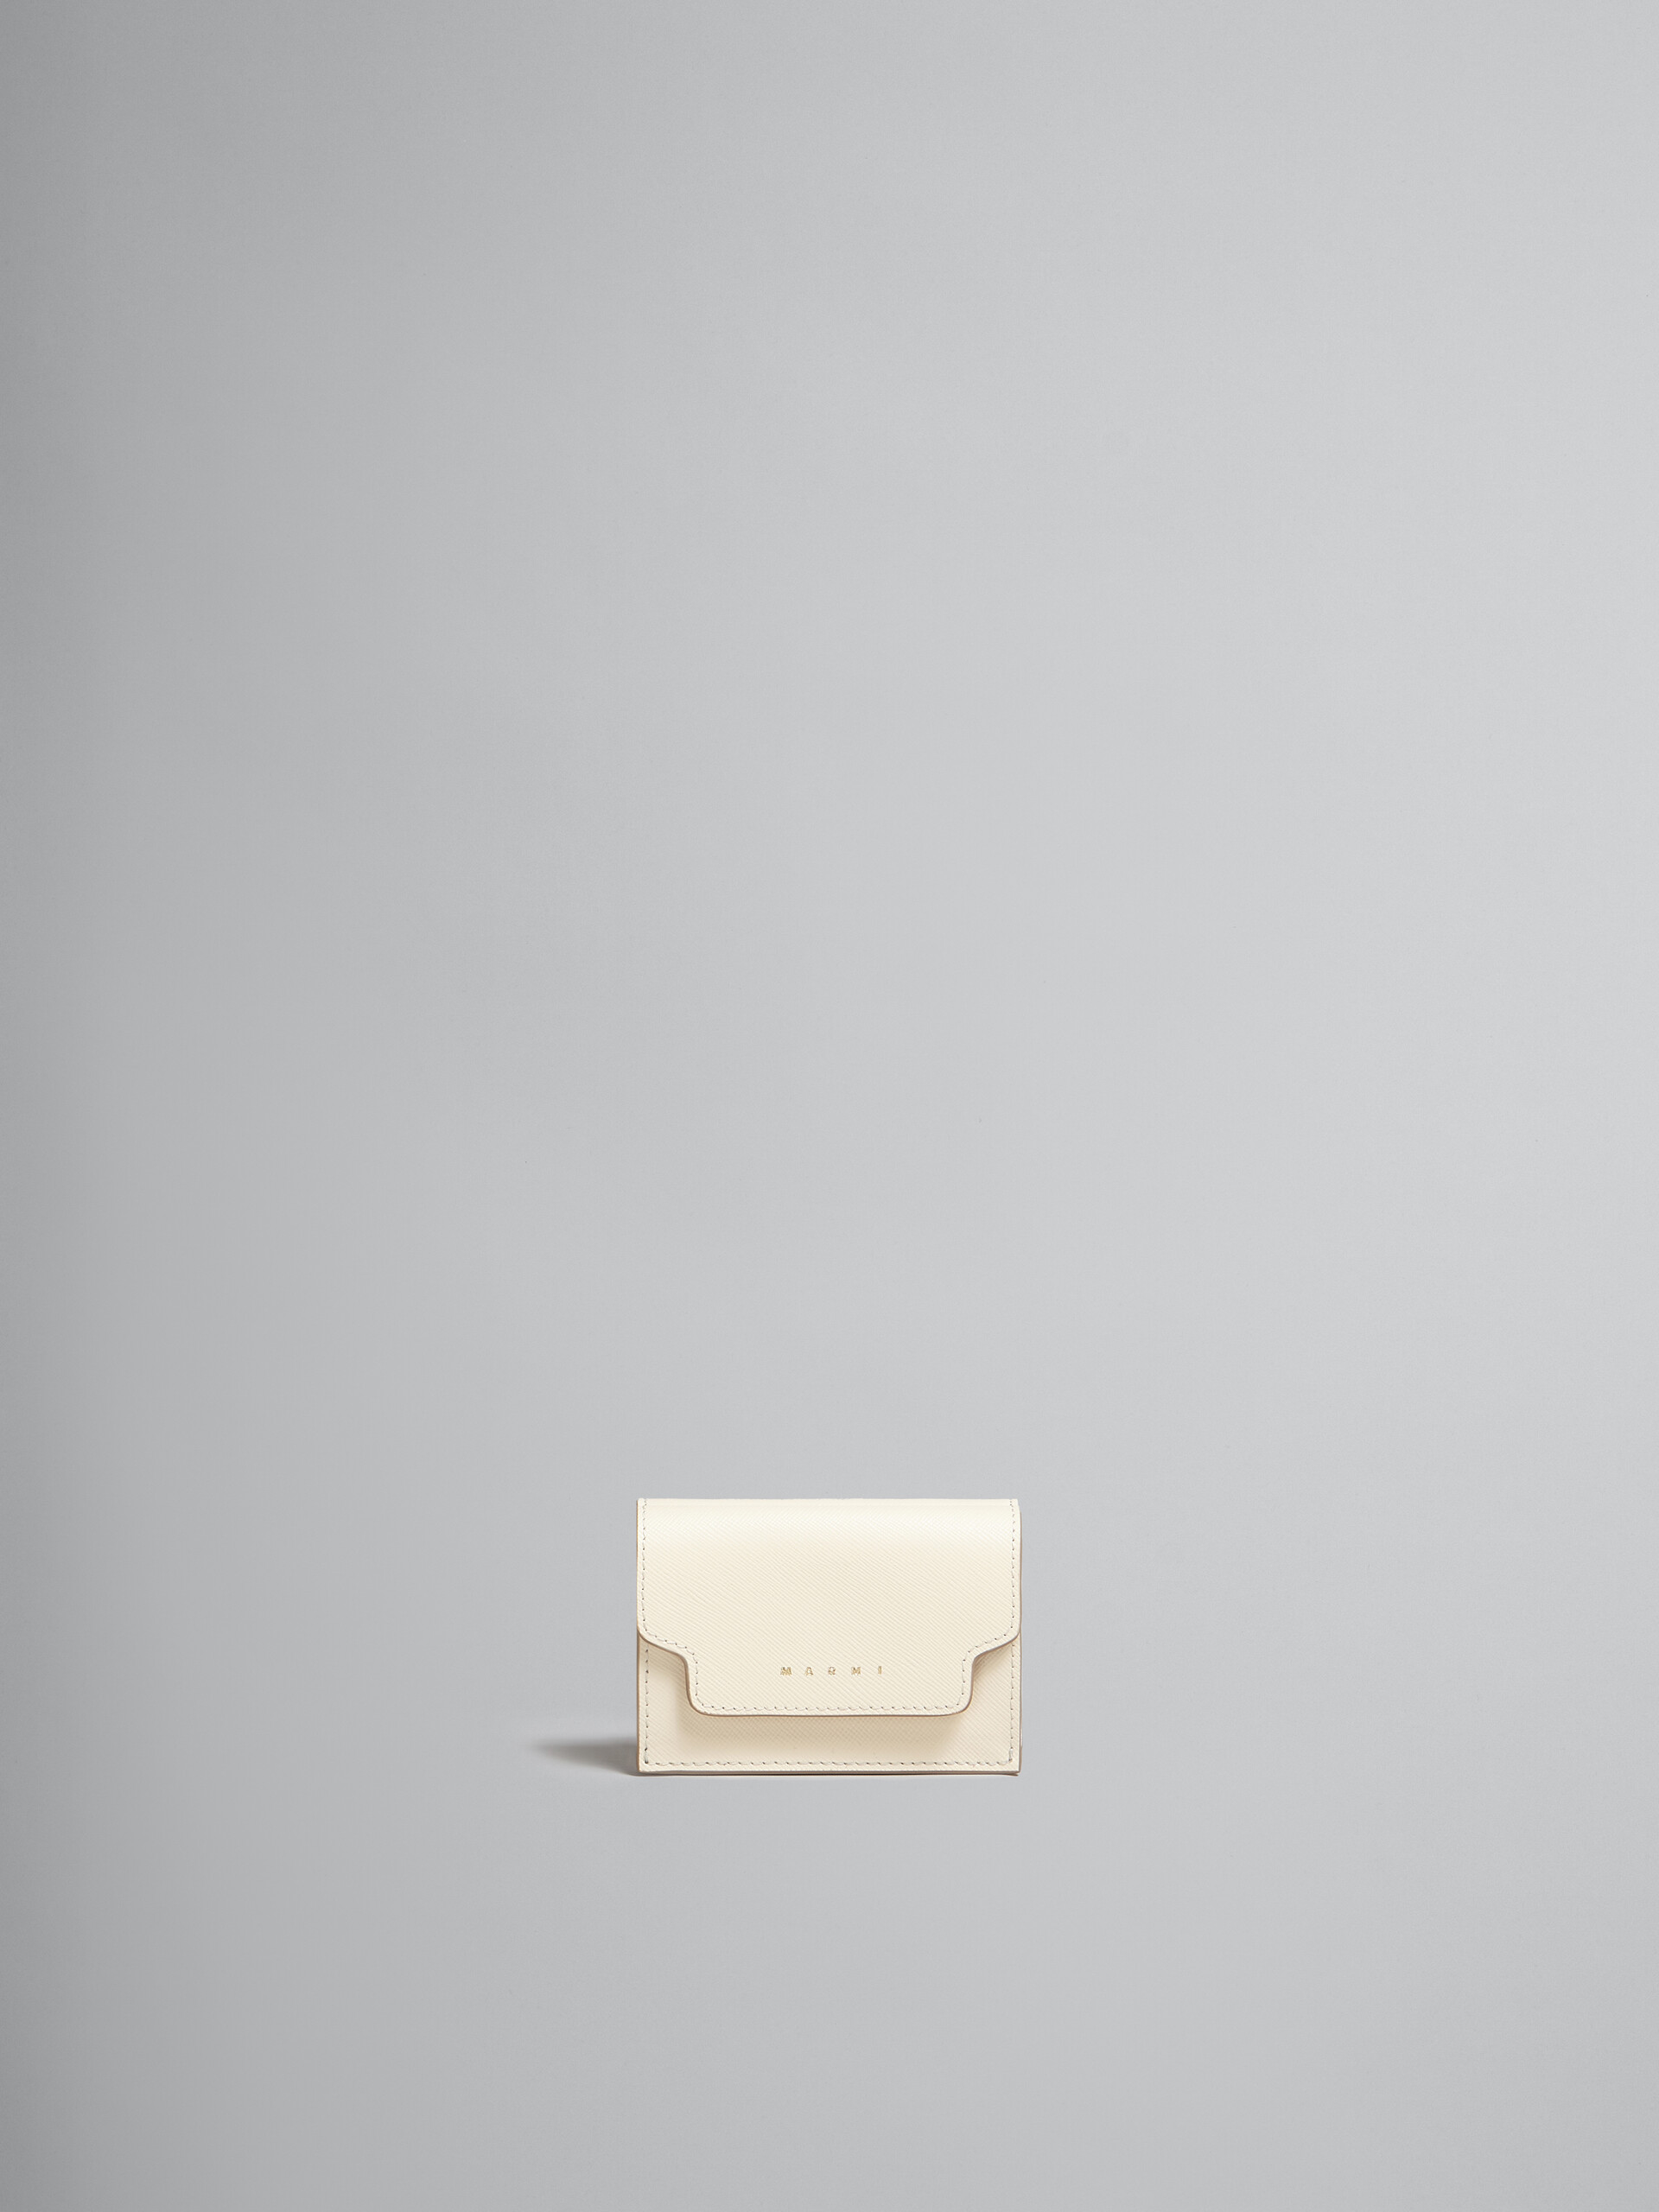 ブラック サフィアーノレザー製三つ折りウォレット - 財布 - Image 1